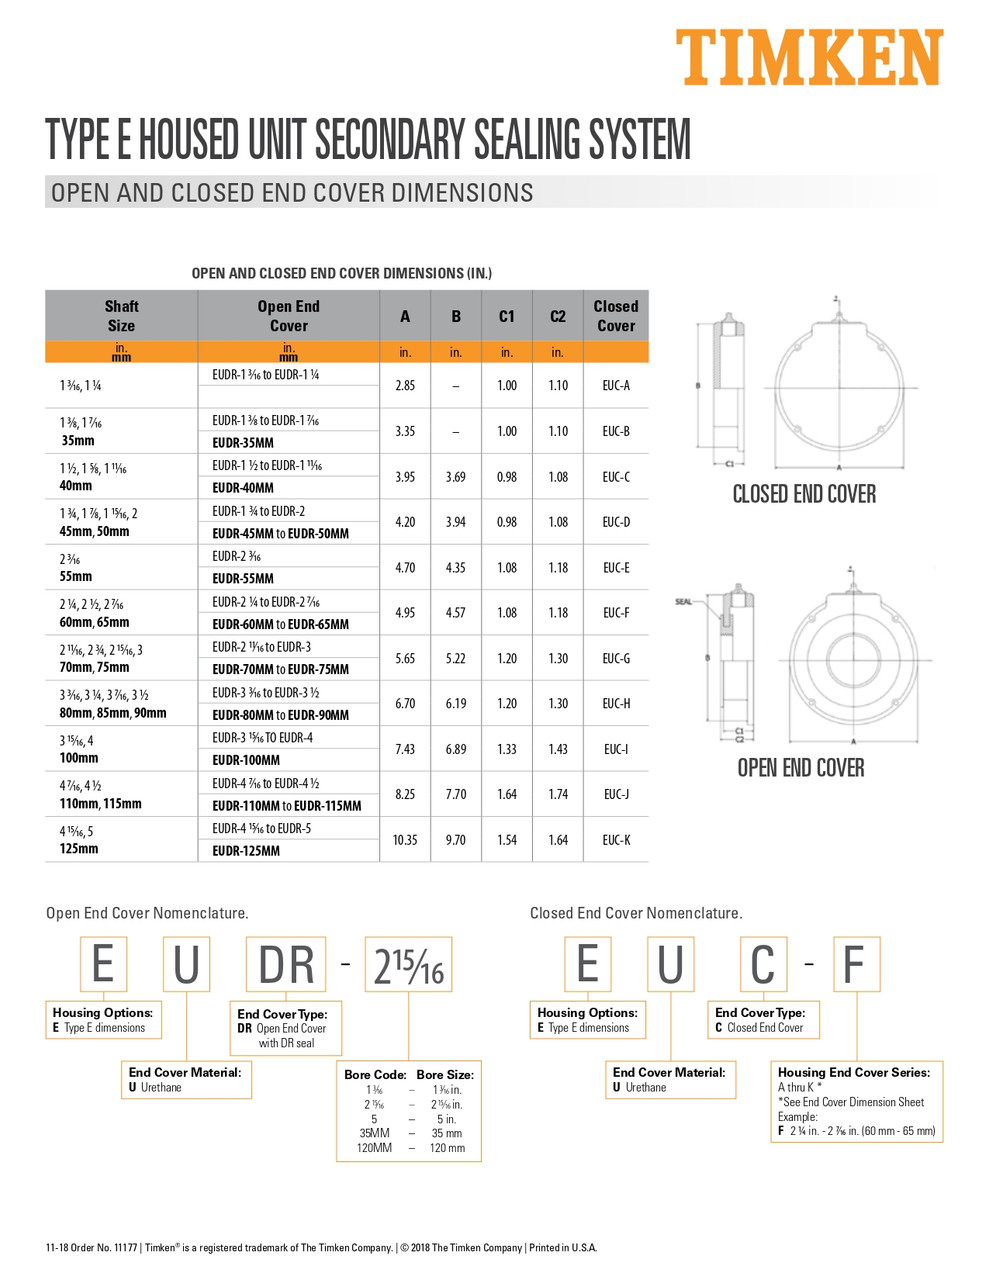 1-7/8" Type-E Bearing Open End Cover  EUDR-1 7/8